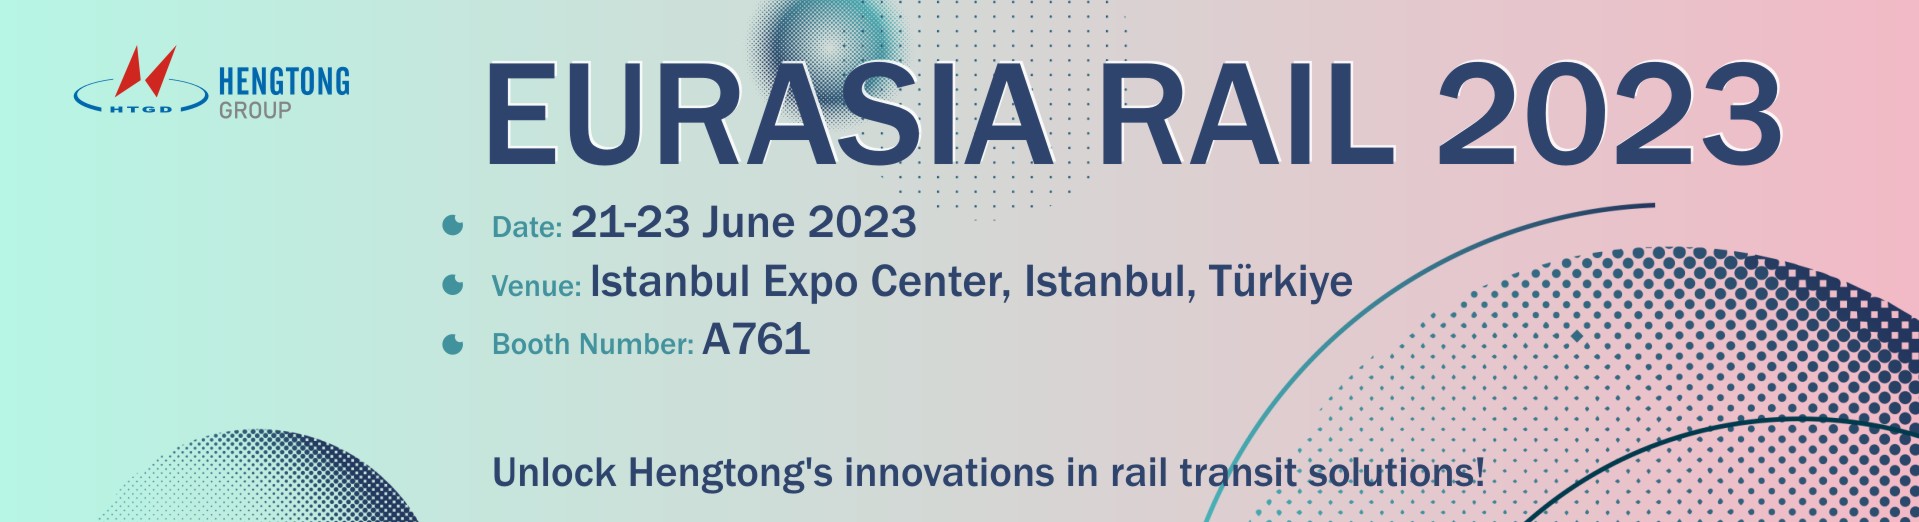 EURASIA RAIL 2023